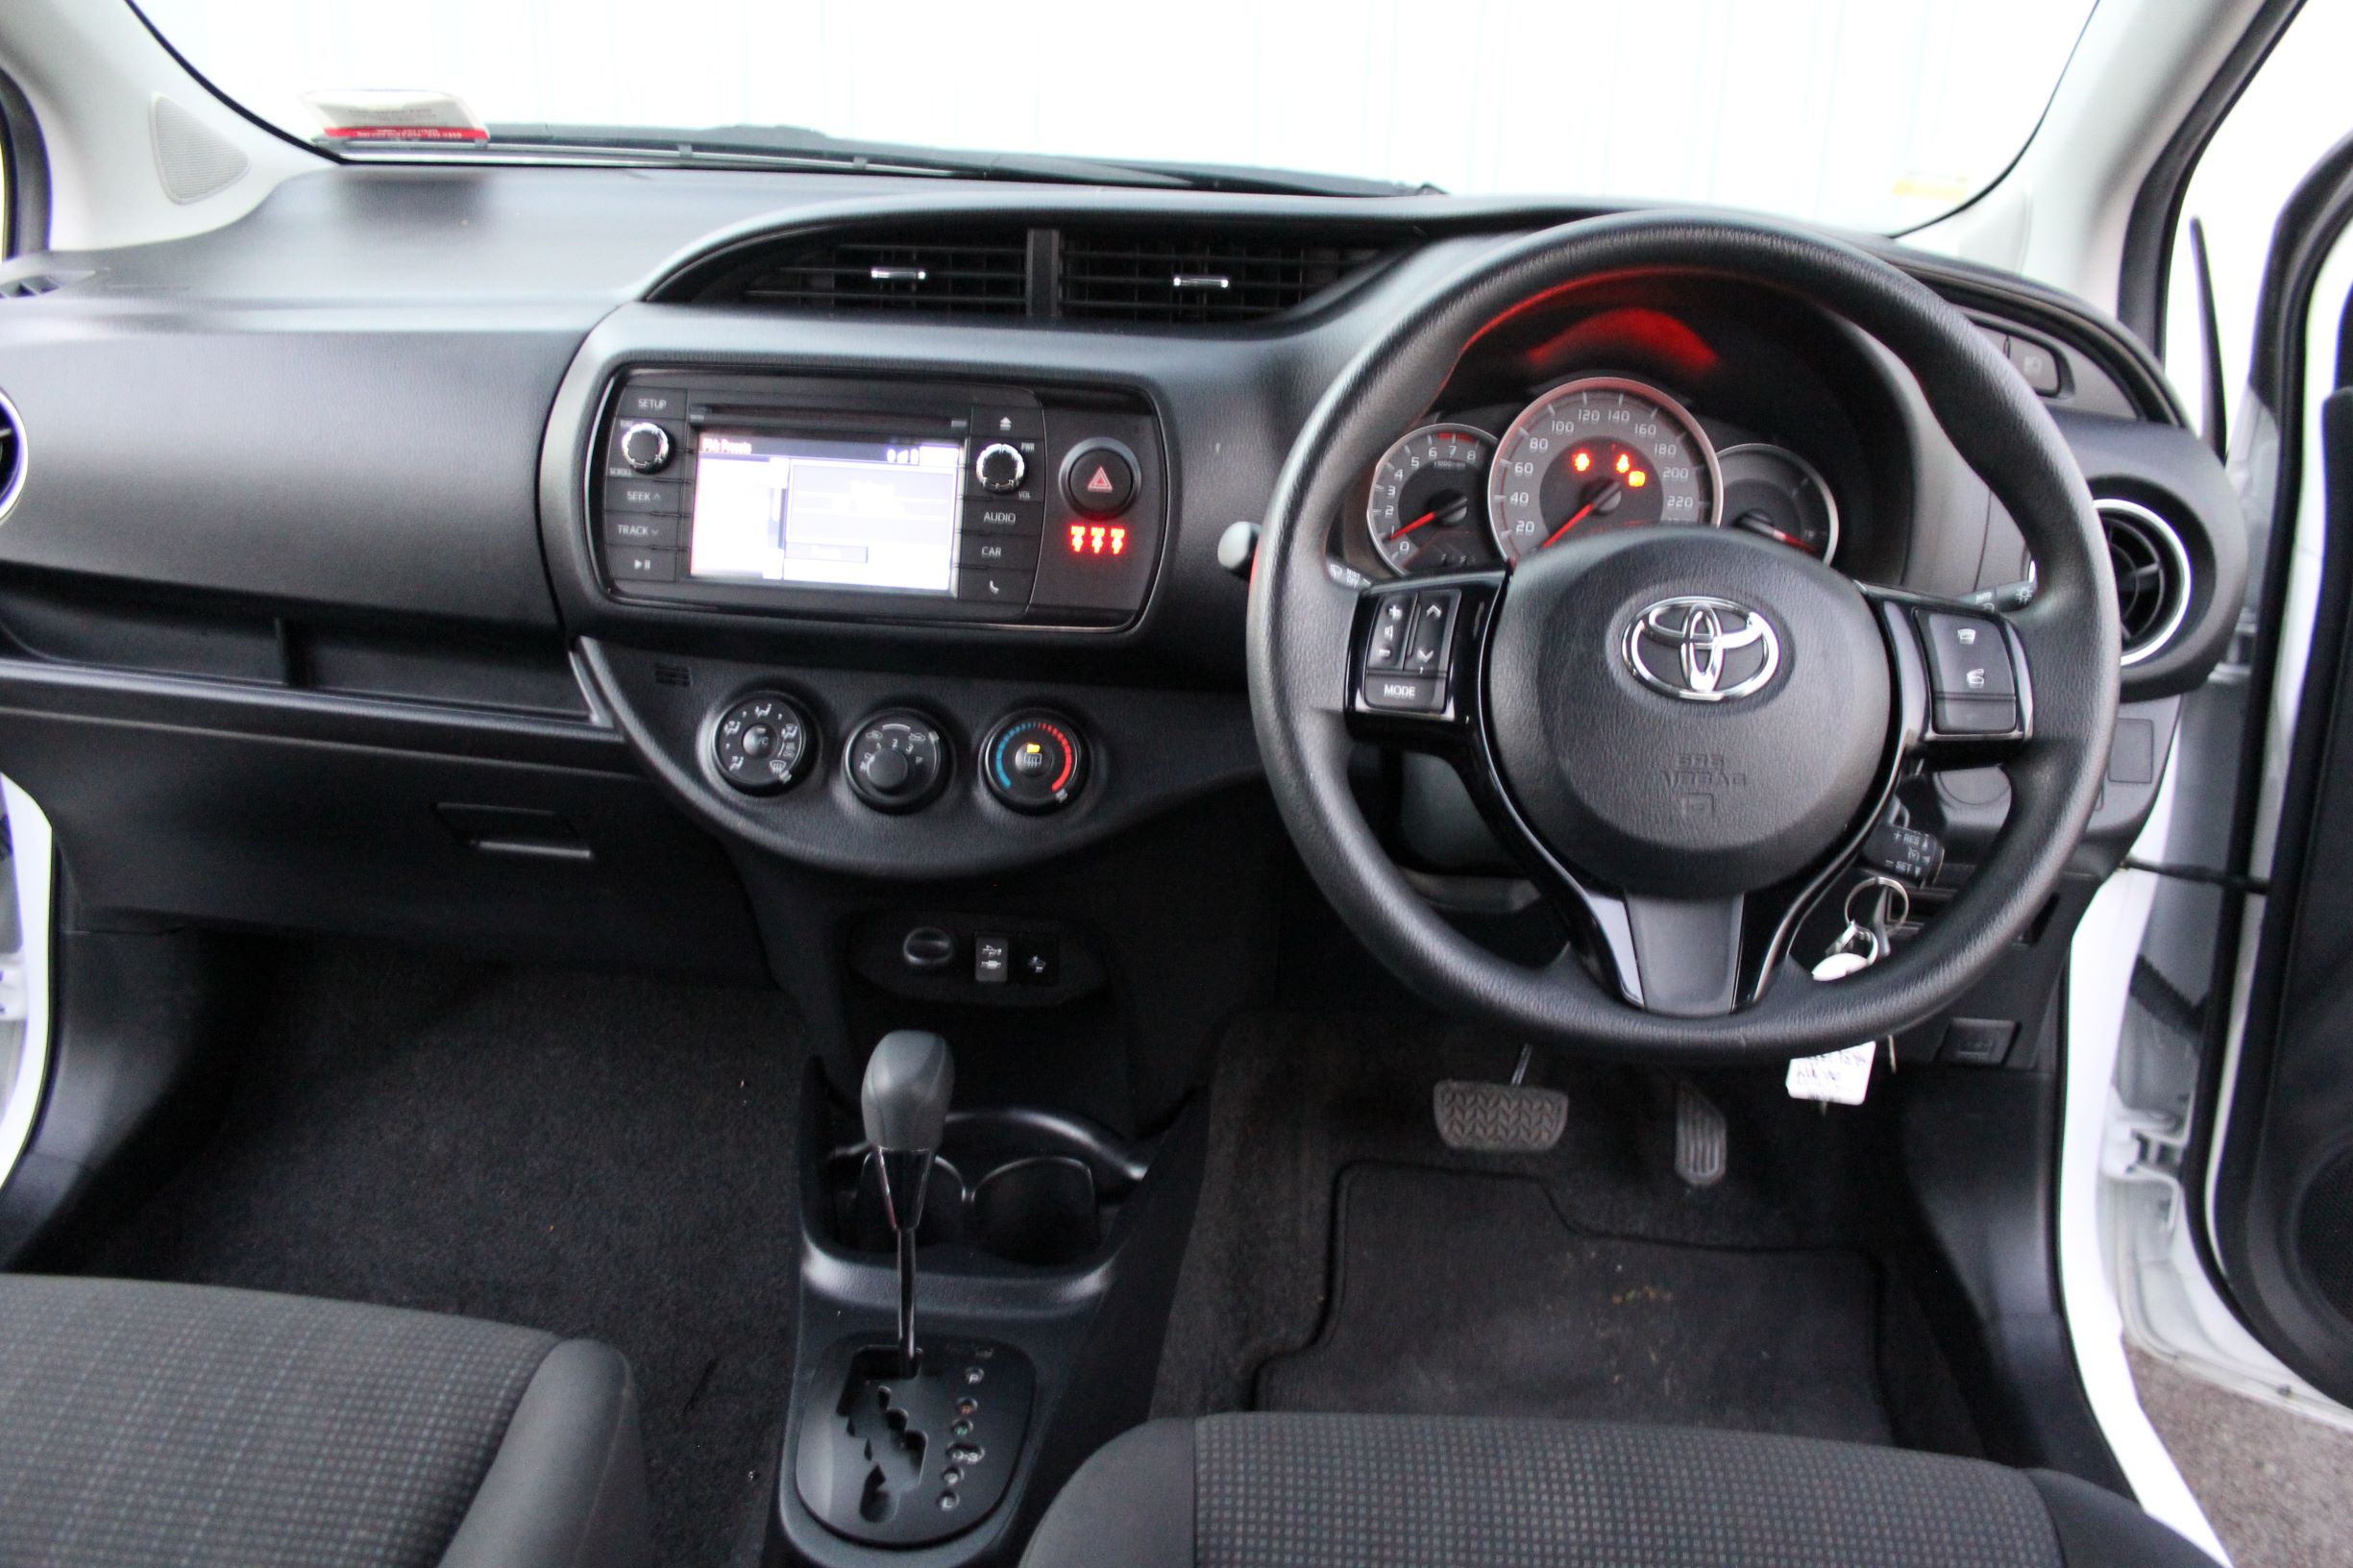 Toyota YARIS 5 DOOR HATCH 2018 for sale in Auckland